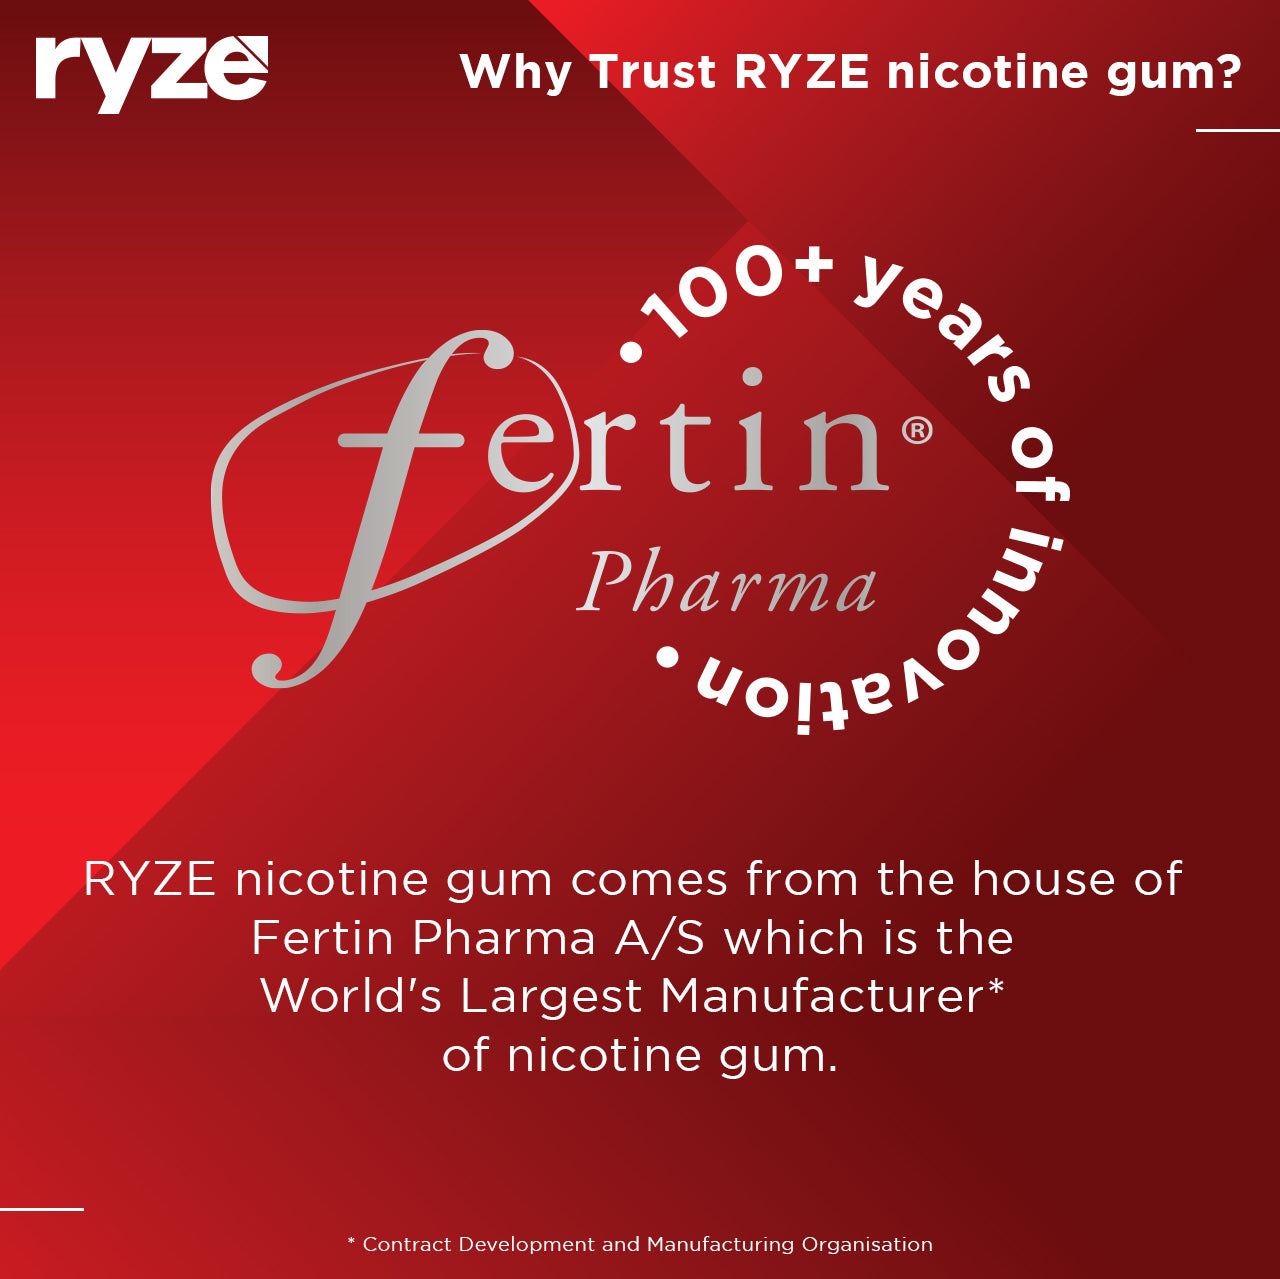 buy nicotine gum - Ryze, Buy Nicotine Gums Online at Best Prices in India, buy nicotine gum online, nicotine gum uses, nicotine gum price,  